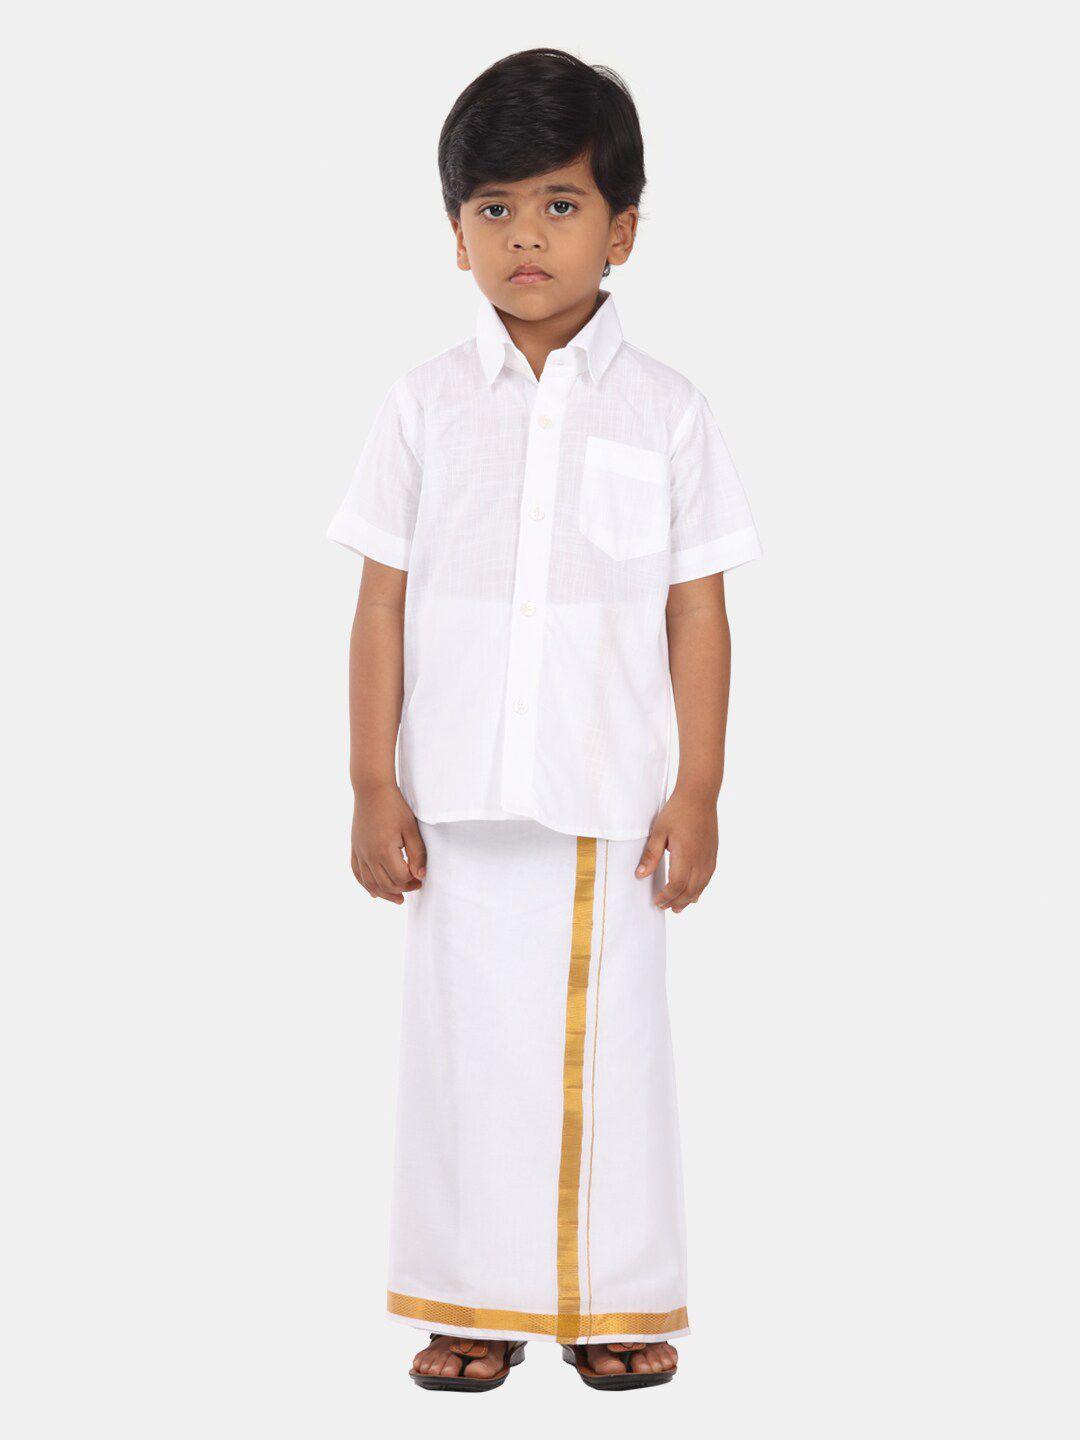 Sethukrishna Boys Ethnic Pure Cotton Shirt And Veshti Clothing Set